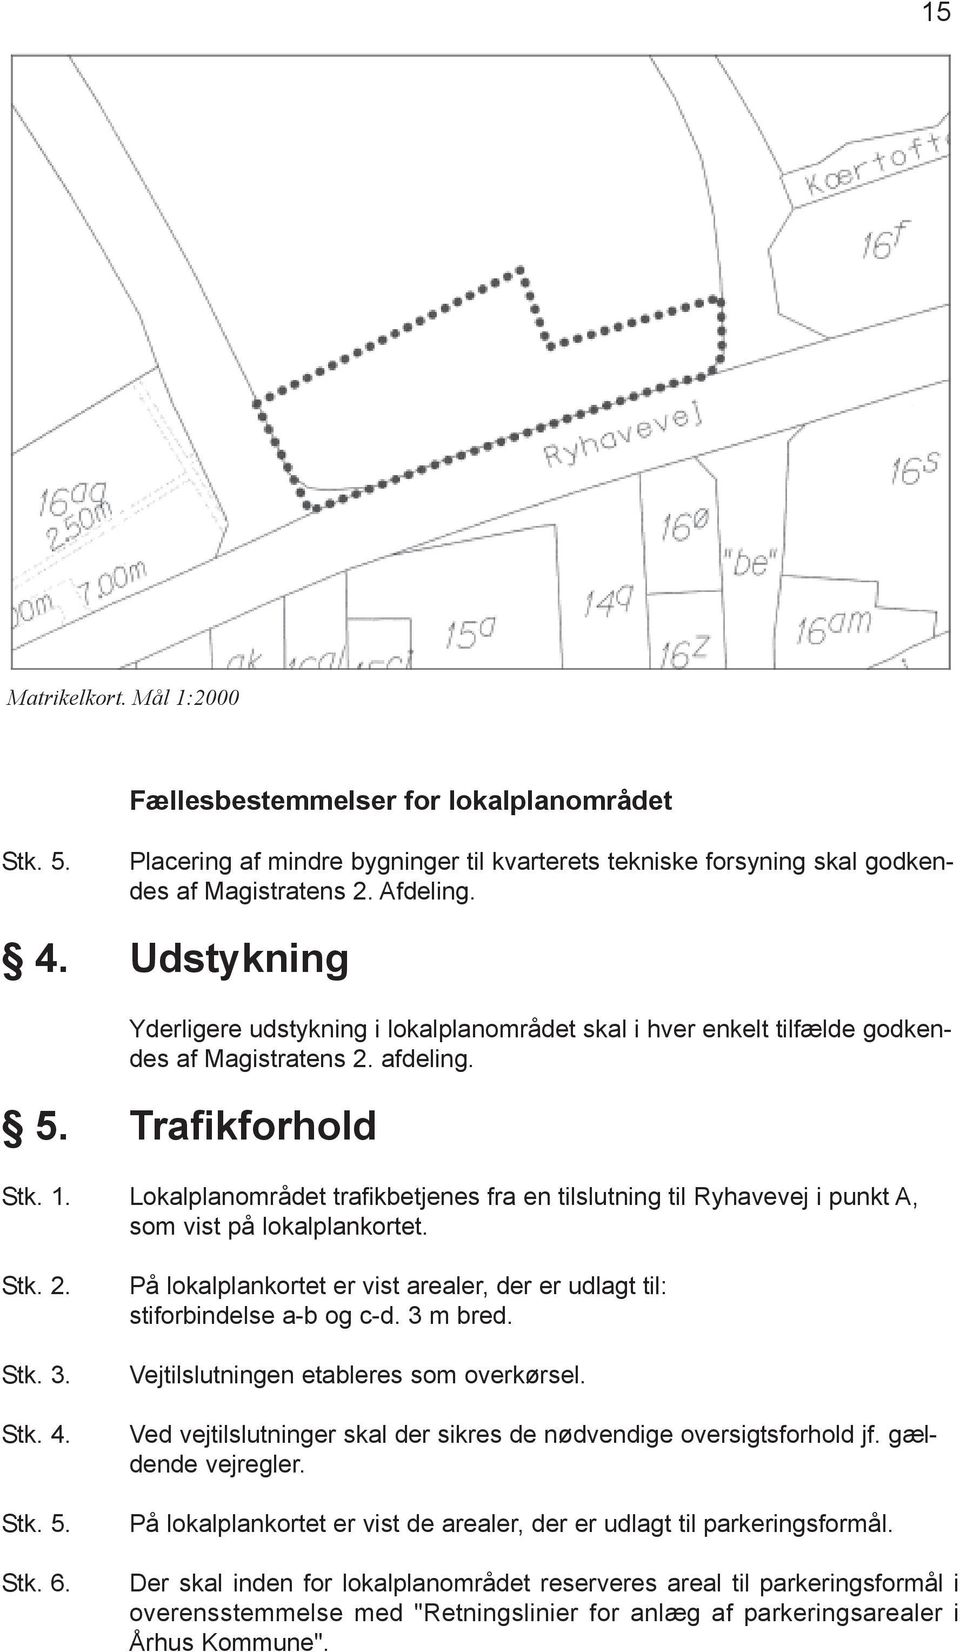 Lokalplanområdet trafikbetjenes fra en tilslutning til Ryhavevej i punkt A, som vist på lokalplankortet. Stk. 2. Stk. 3. Stk. 4. Stk. 5. Stk. 6.